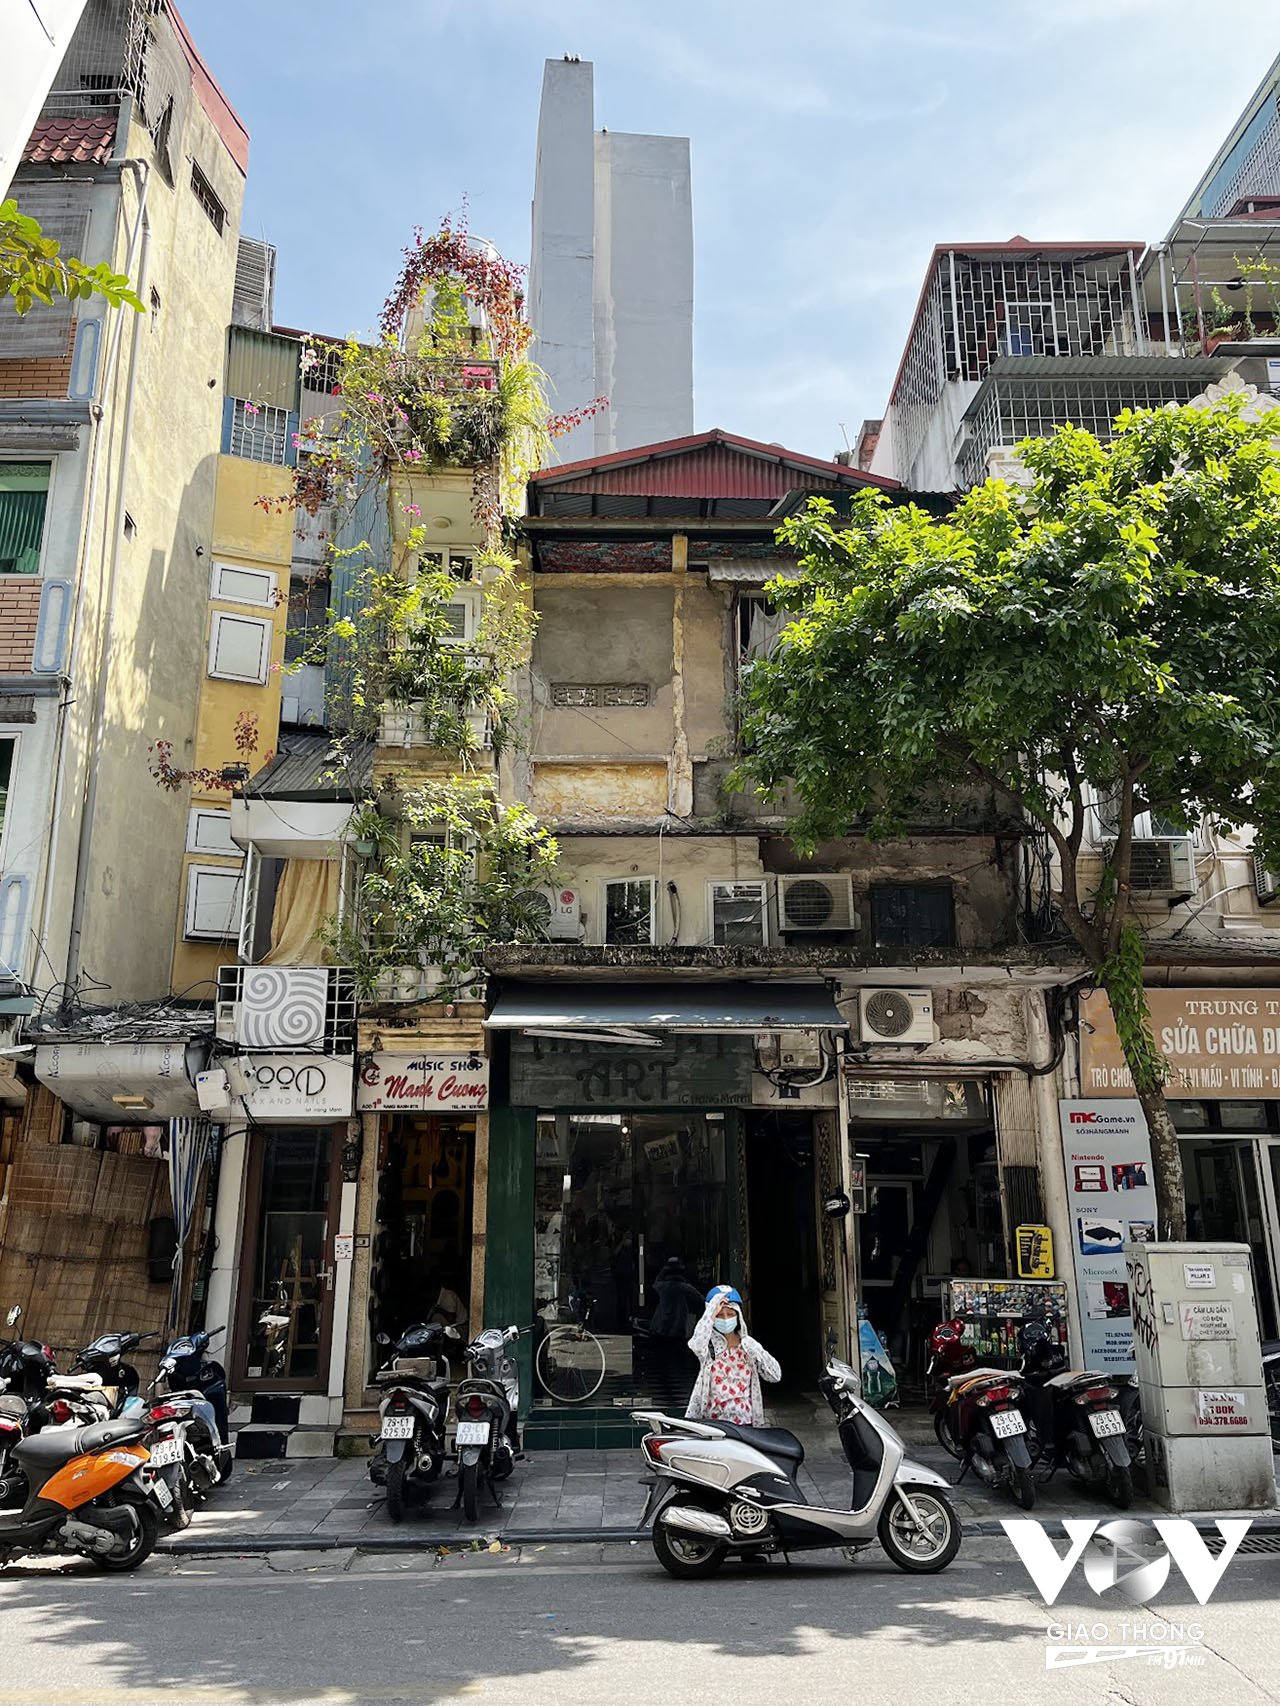 Một căn nhà 'siêu hẹp' - đặc trưng trên phố cổ Hà Nội, dù vậy gia chủ cũng rất 'chịu khó' trang trí bằng nhiều loại cây cảnh khắp các tầng